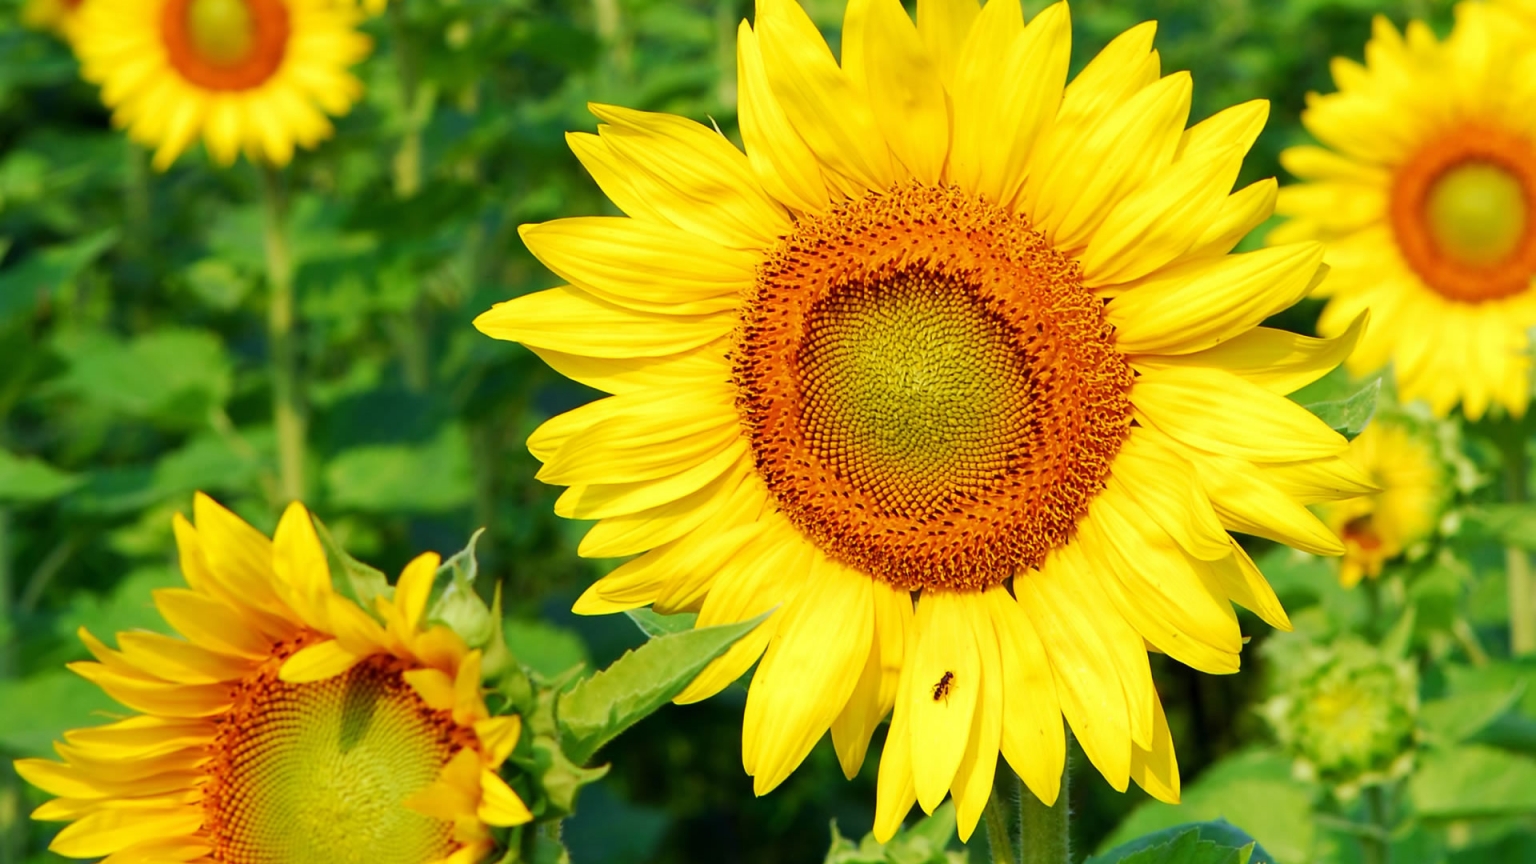 Superb Sunflower for 1536 x 864 HDTV resolution